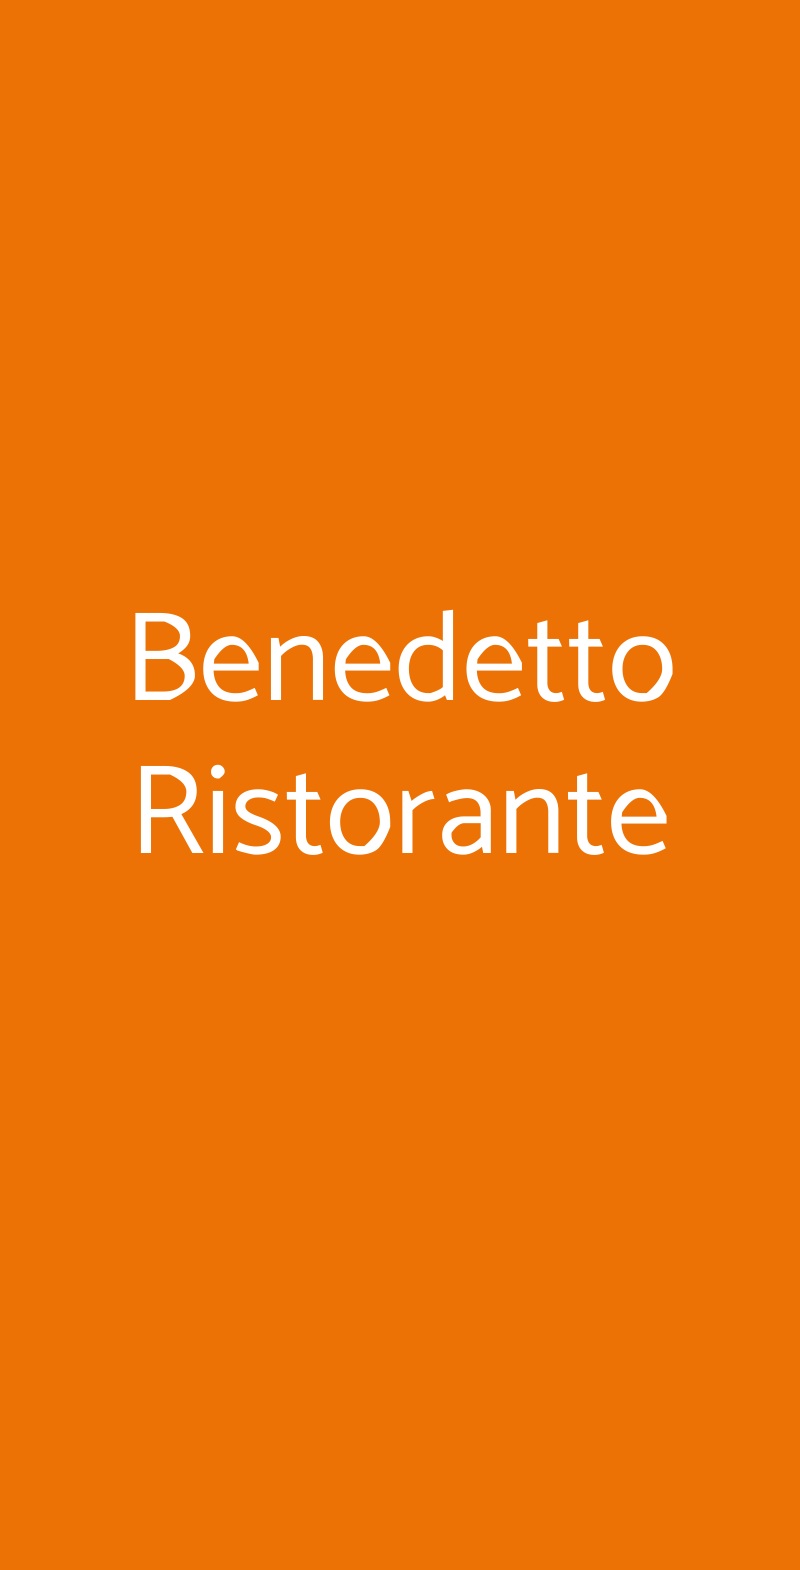 Benedetto Ristorante Roma menù 1 pagina